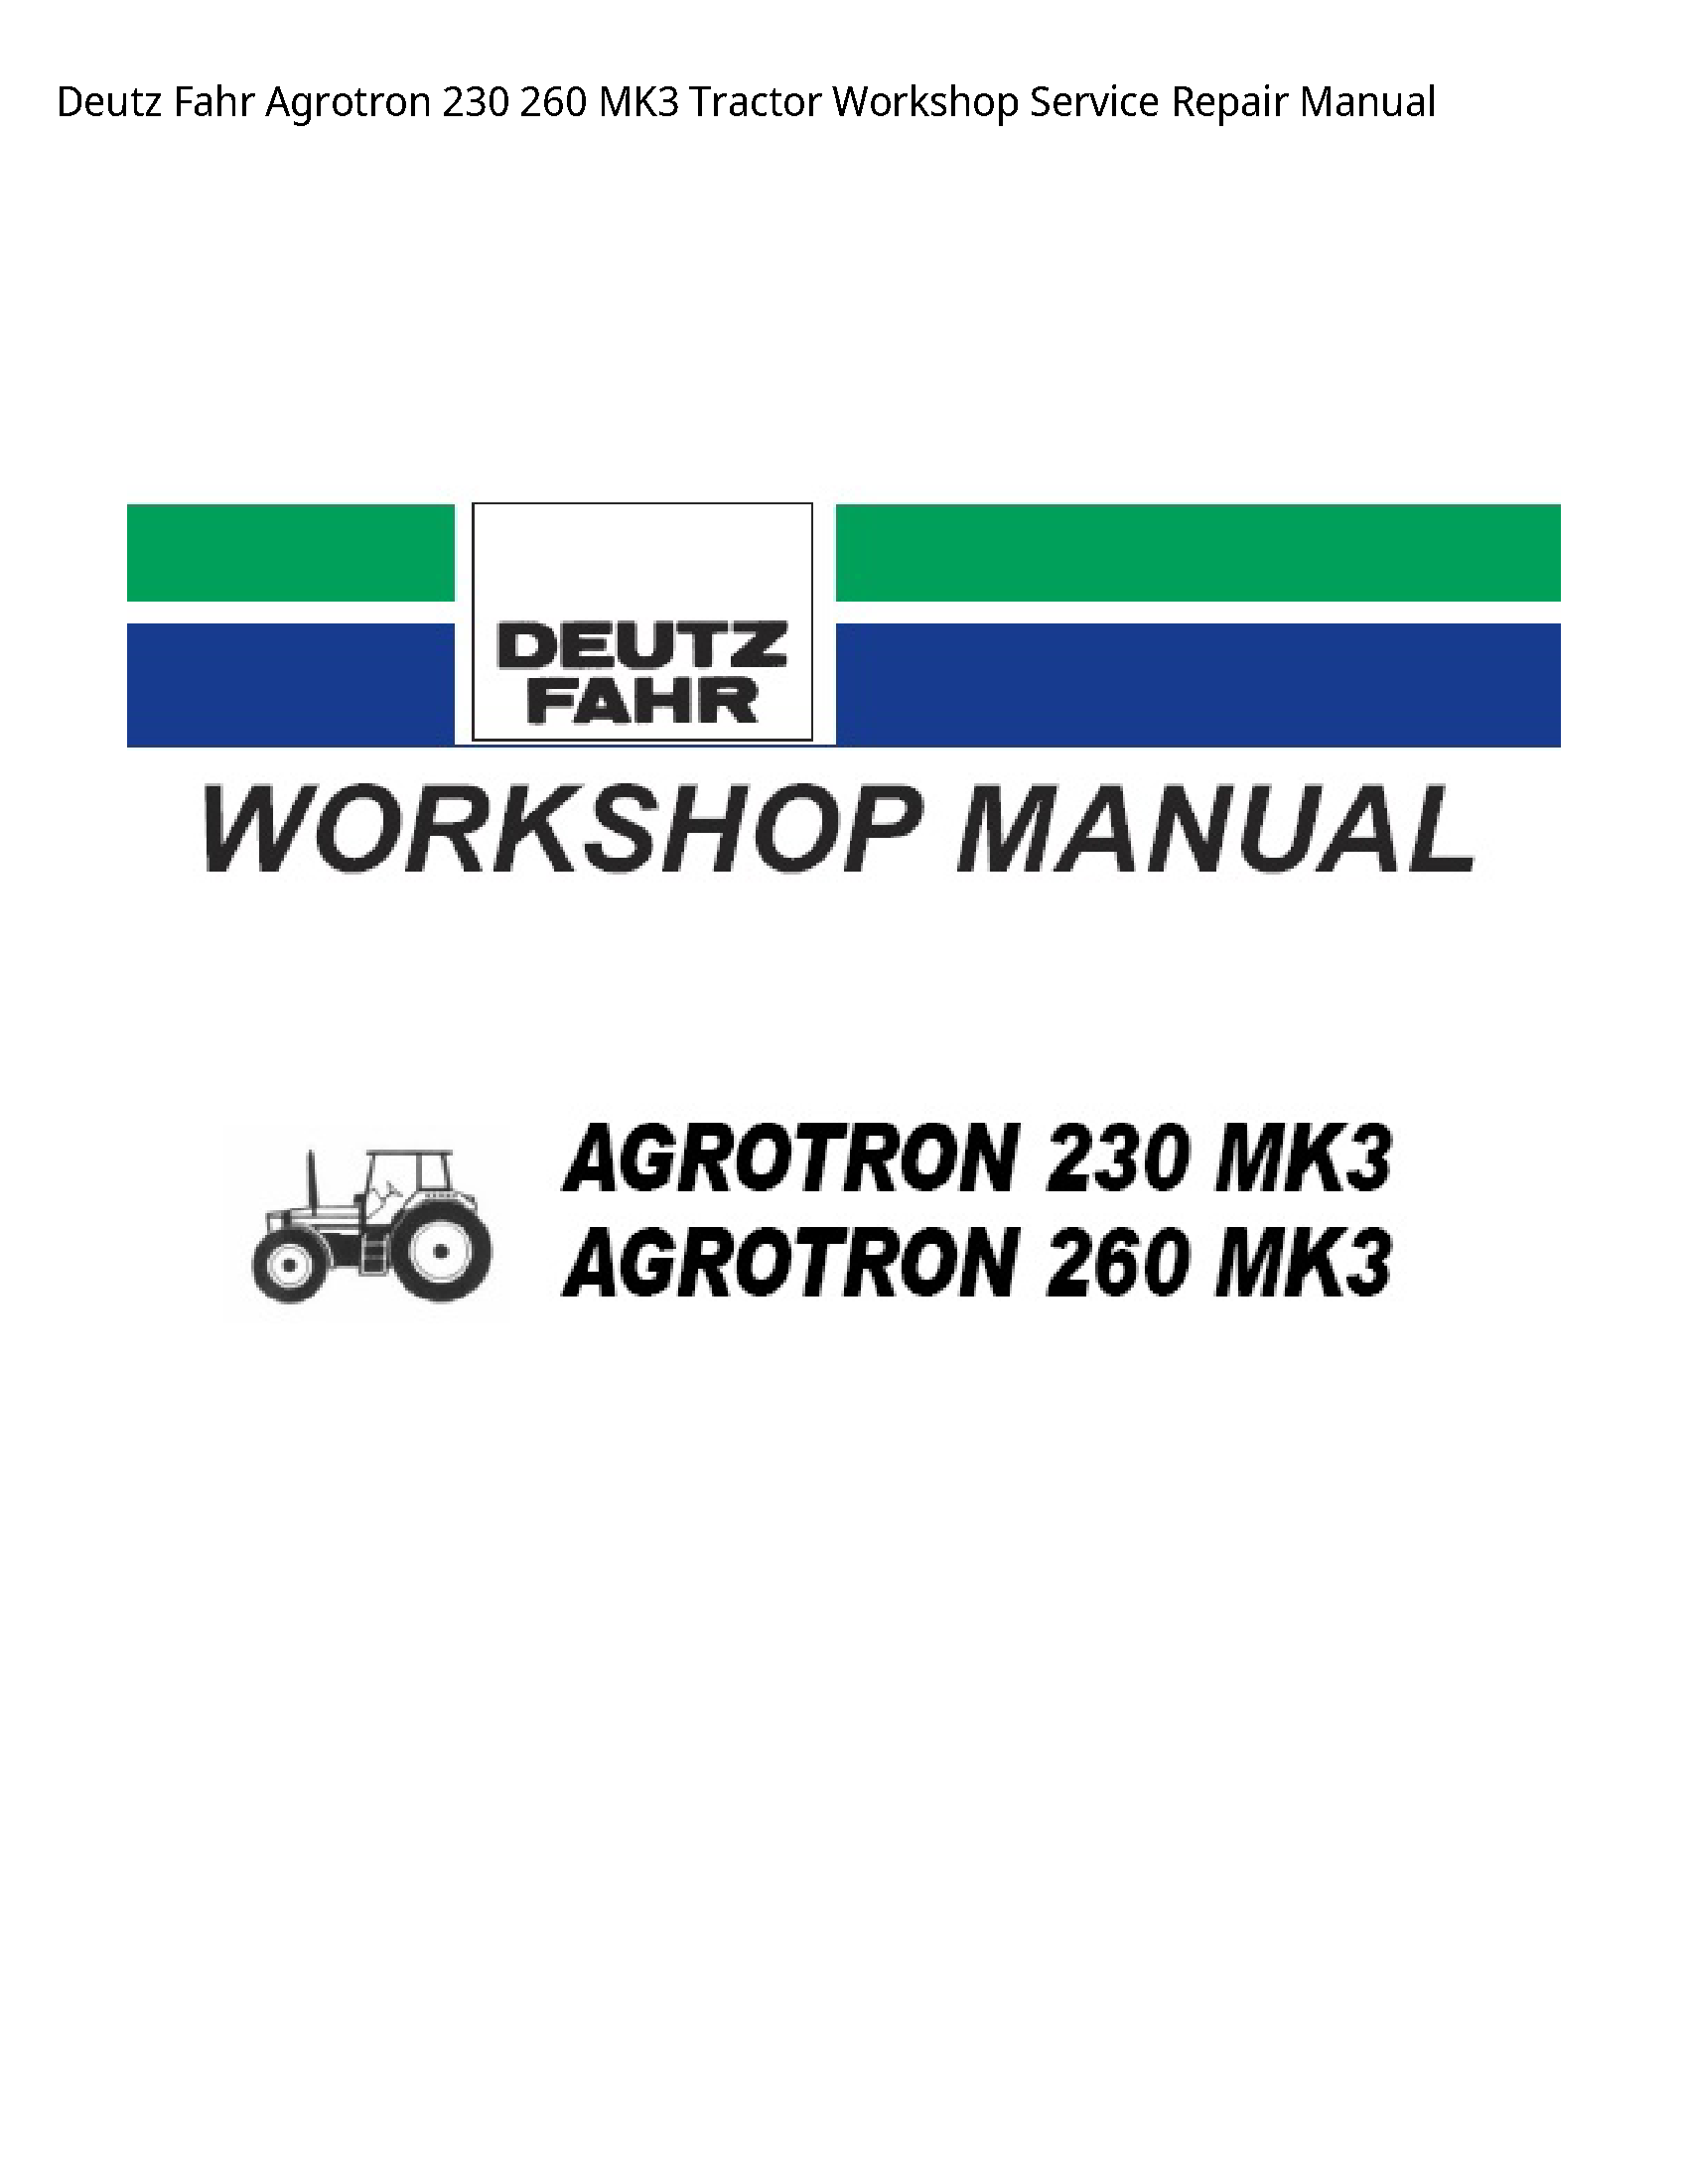 Deutz 230 Fahr Agrotron Tractor manual